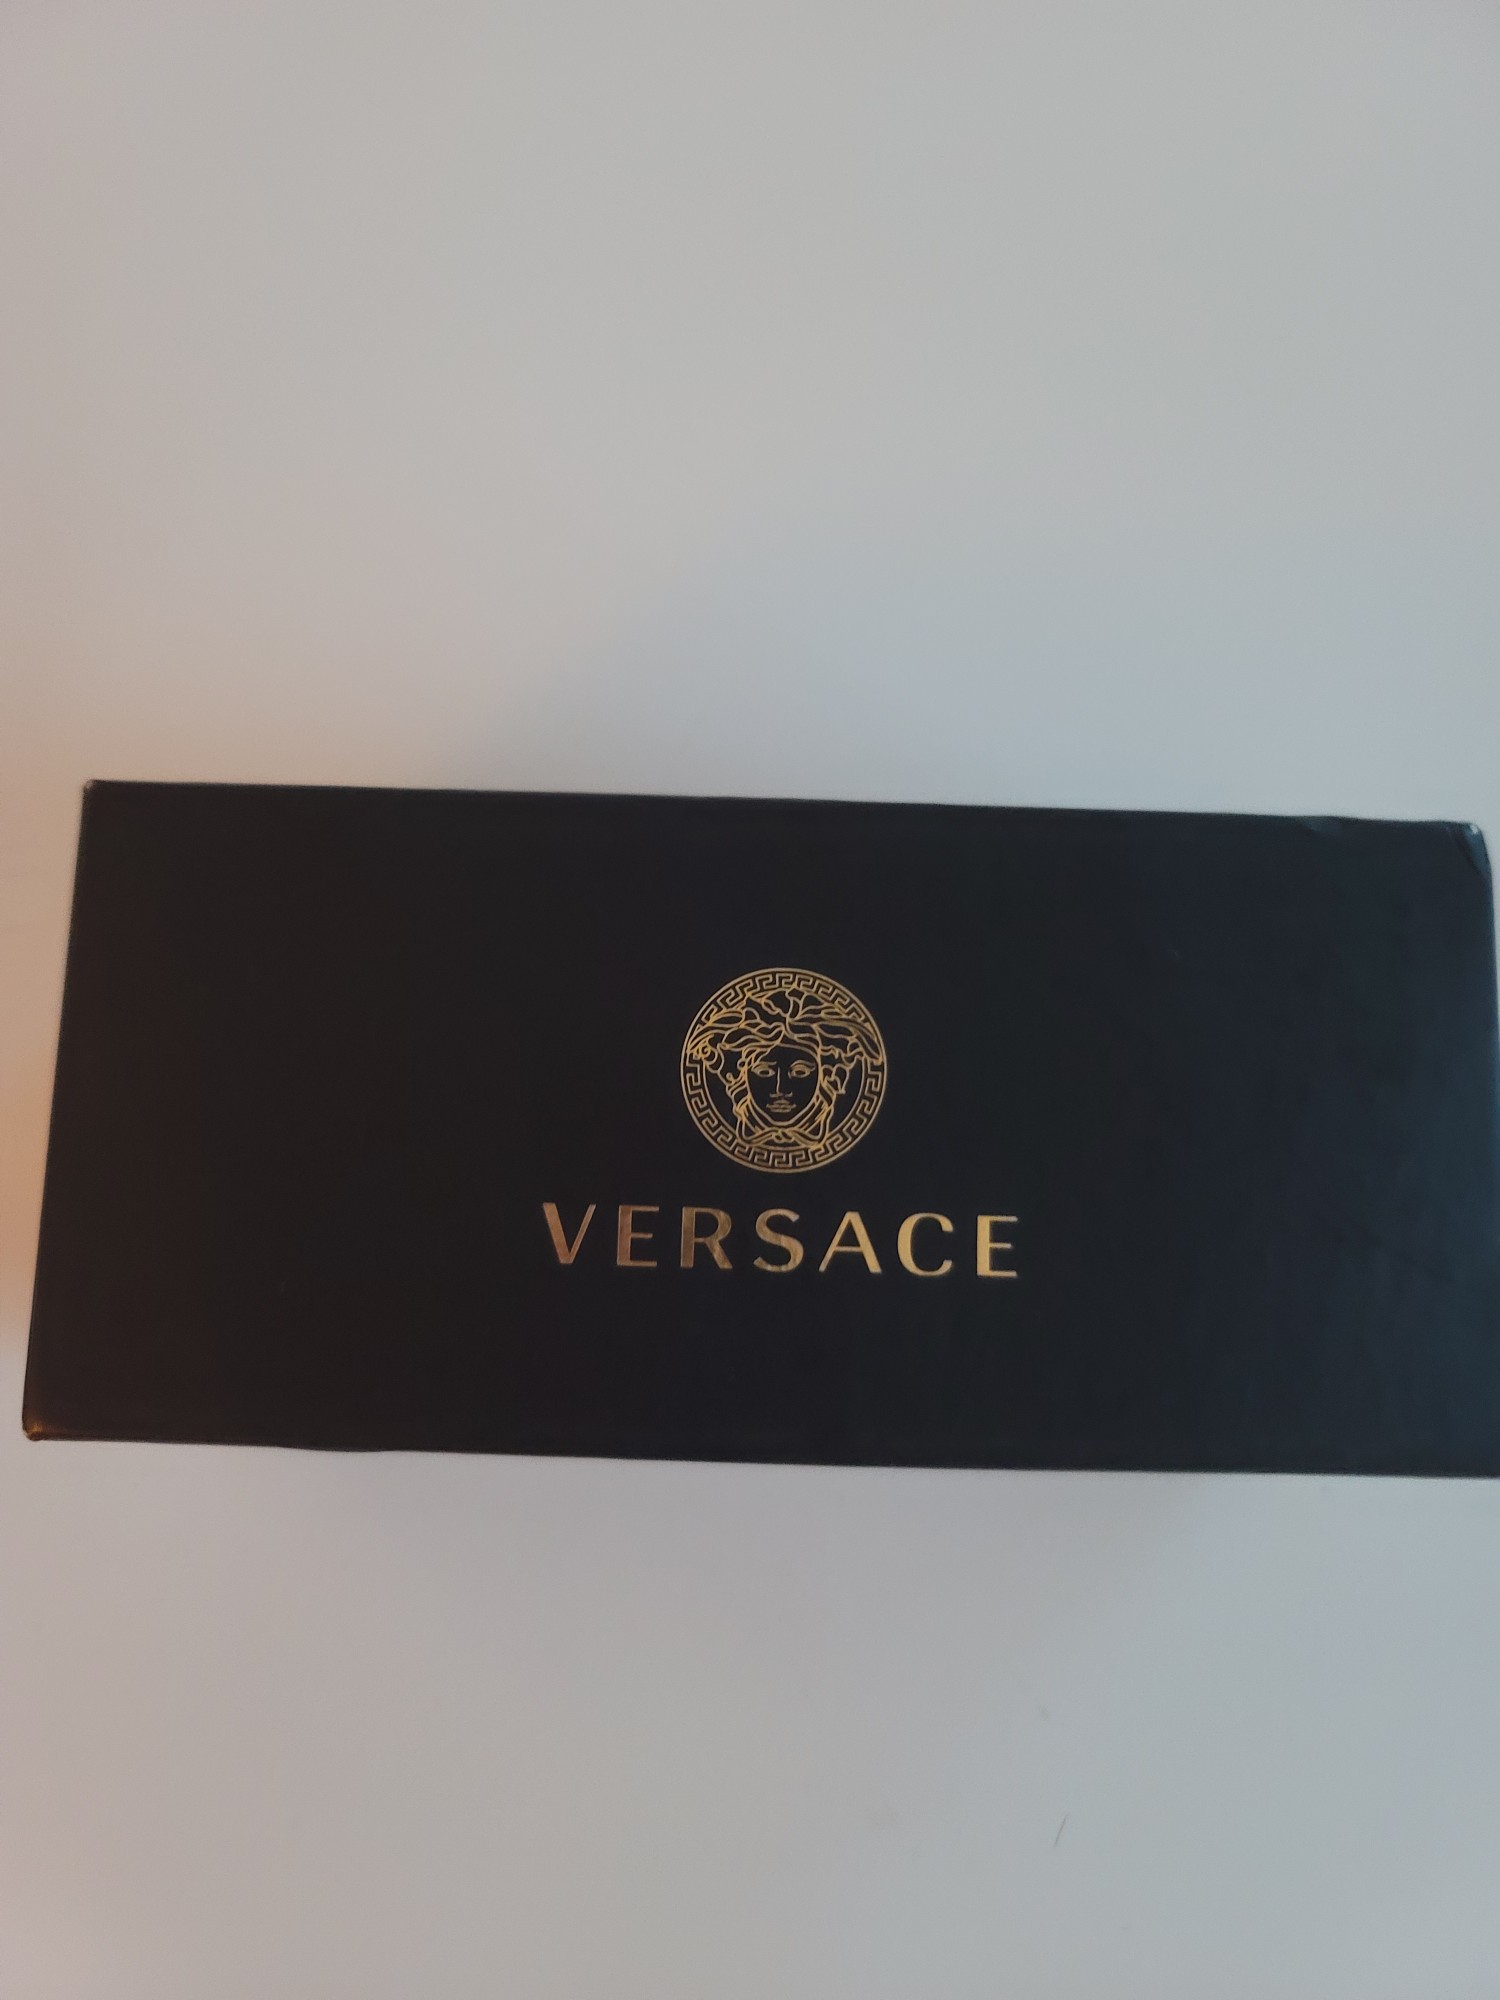 joyas, relojes y accesorios - Lentes de sol originales de la marca Versace 0